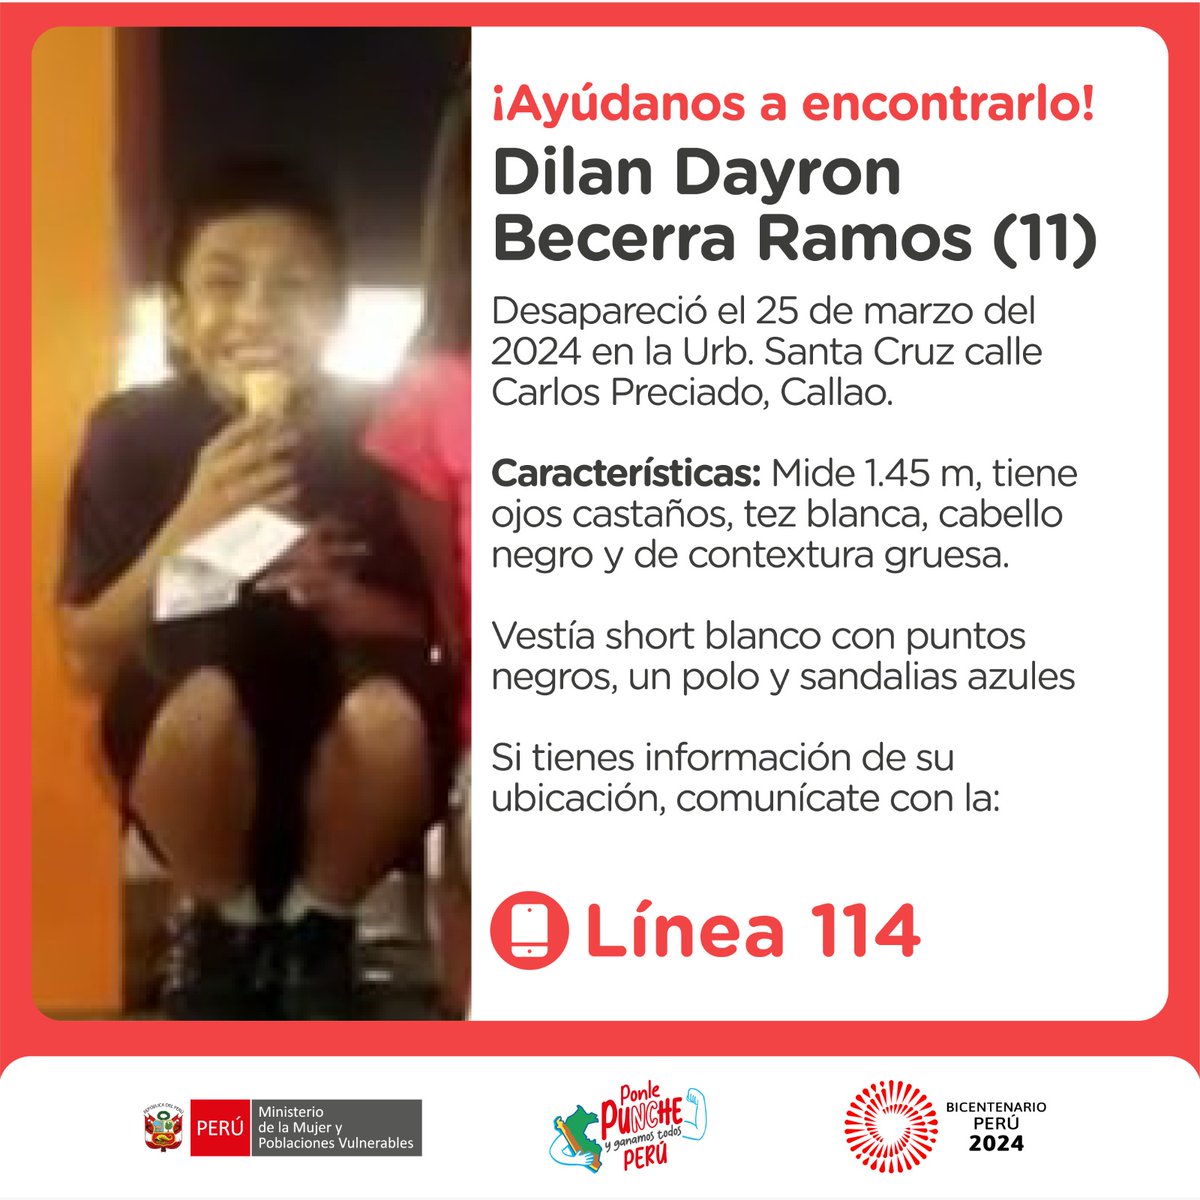 ¡Ayúdanos a encontrarlos! Vanessa y Dilan desaparecieron el 25 de marzo en la urbanización Santa Cruz, en el Callao. Si tienes alguna información sobre su ubicación, por favor llama a la ☎️ #Línea114.